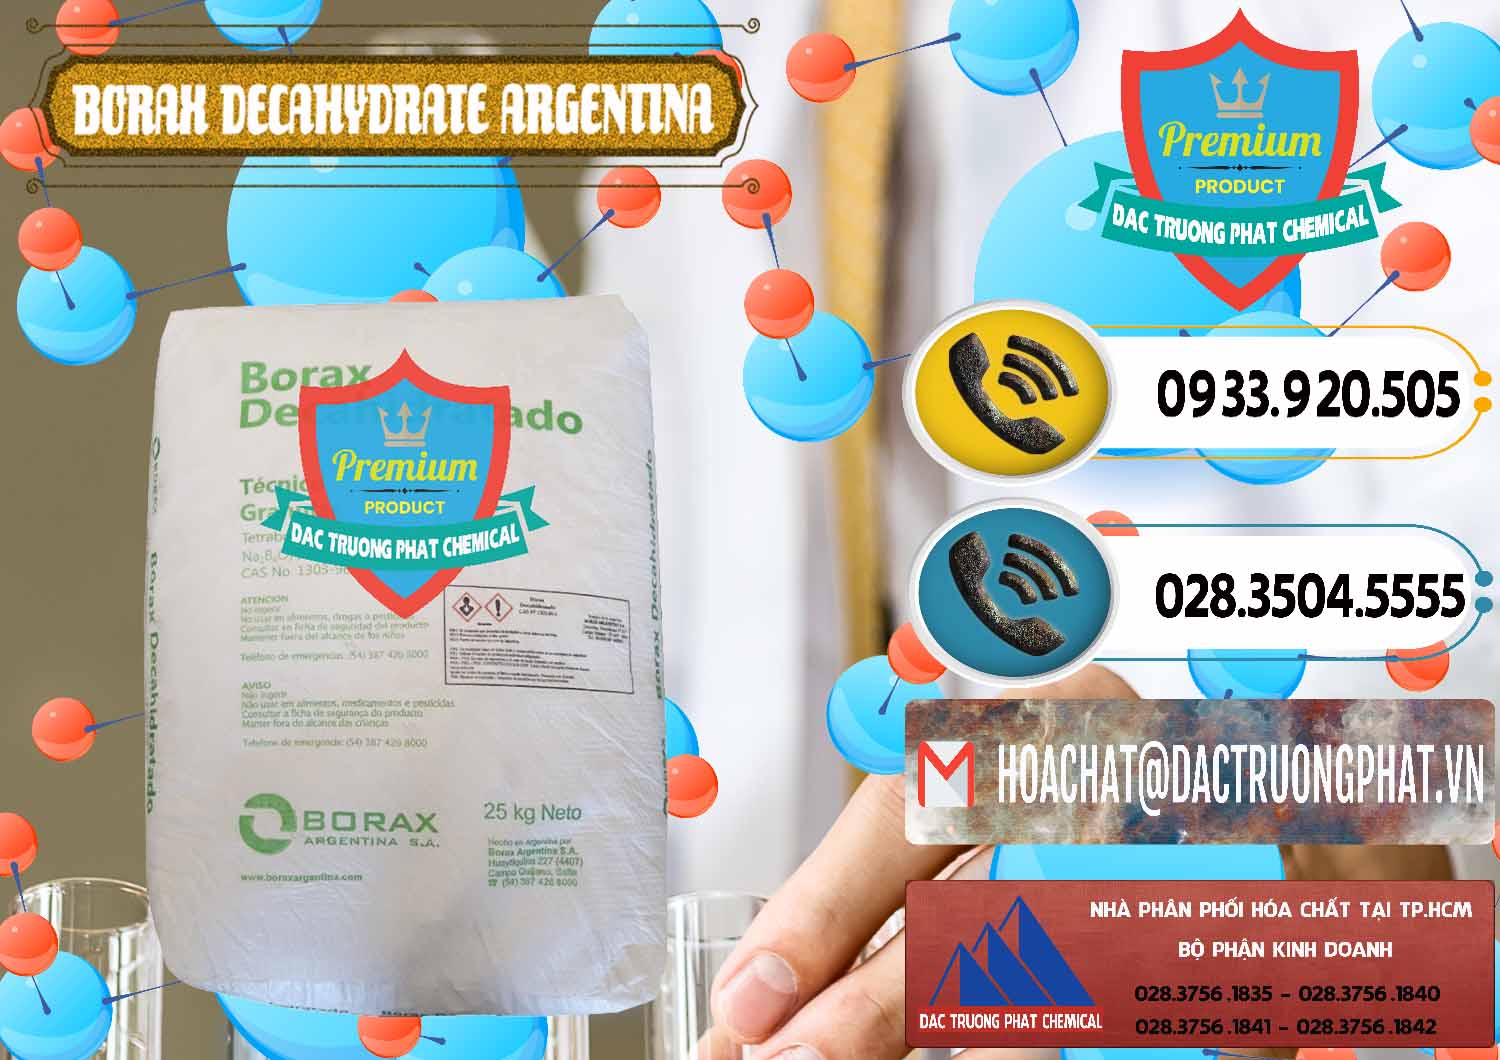 Cty nhập khẩu _ bán Borax Decahydrate Argentina - 0446 - Cty chuyên kinh doanh - phân phối hóa chất tại TP.HCM - hoachatdetnhuom.vn